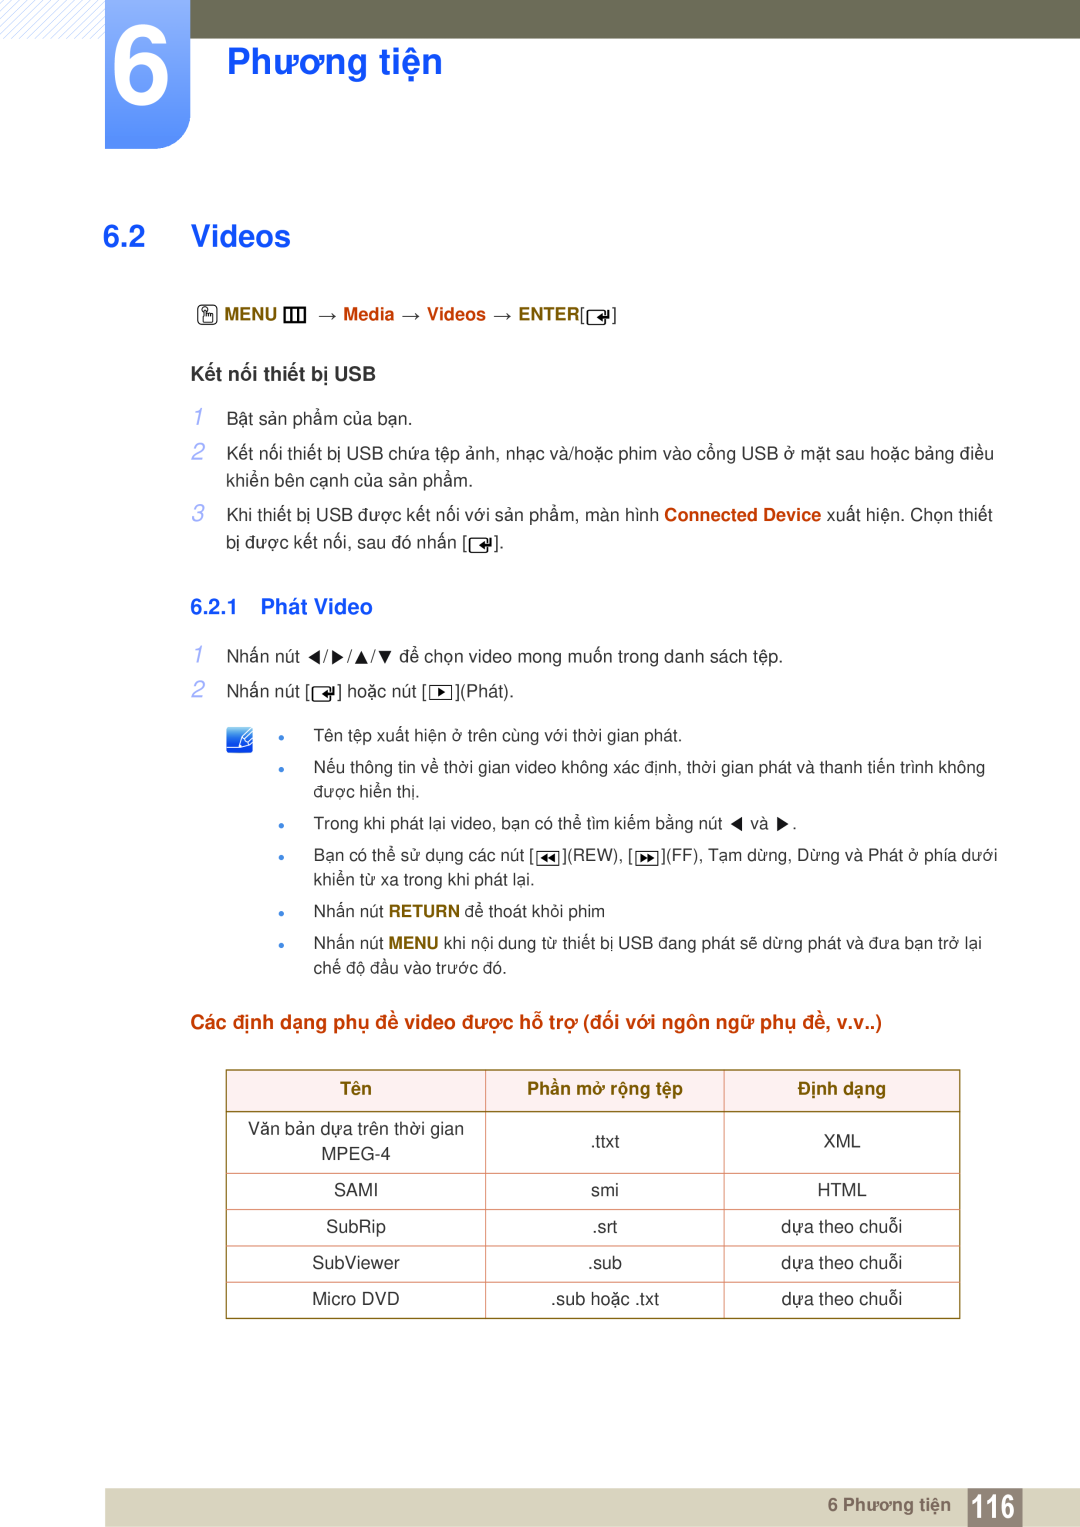 Samsung LH40MEPLGC/XY manual 6.2.1 Phát Video, 6 Phương tiện, O MENU m Media Videos ENTER, Phần mở rộng tệp, Định dạng 